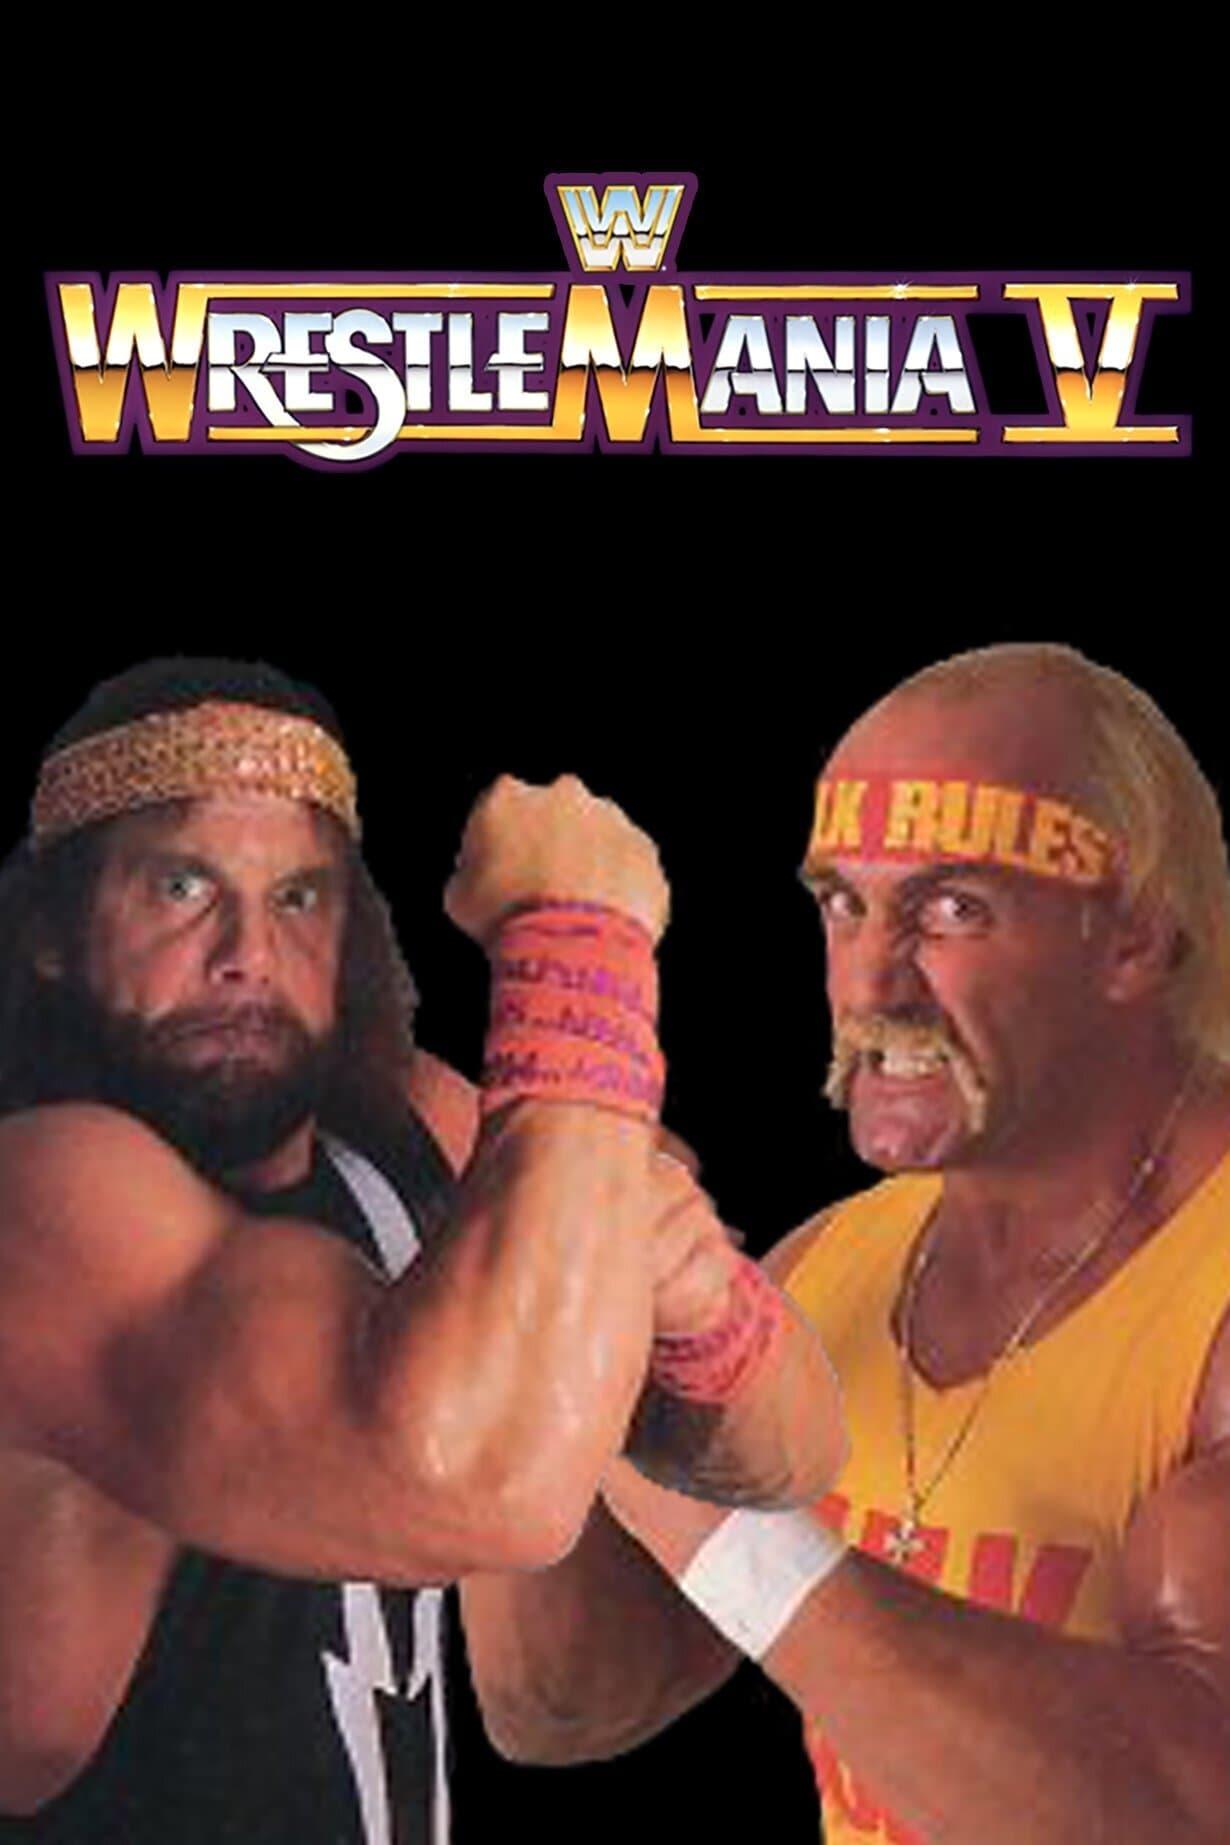 WWE WrestleMania V poster